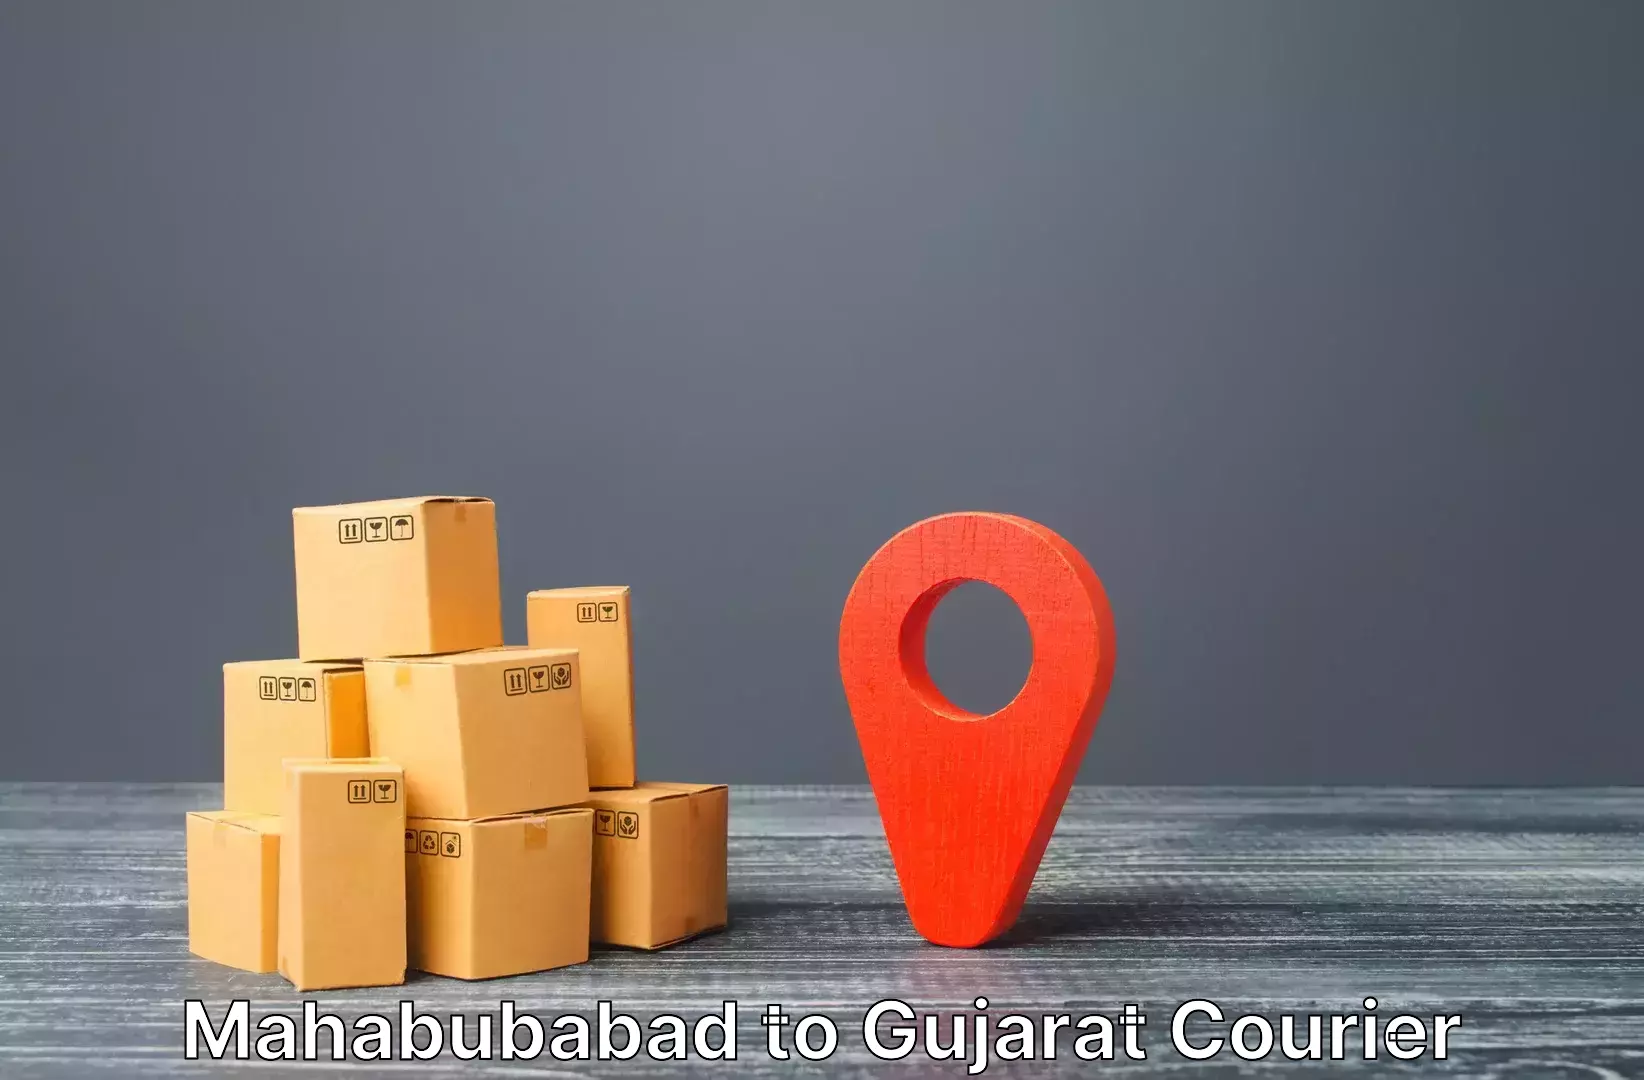 Baggage shipping service Mahabubabad to Jambusar